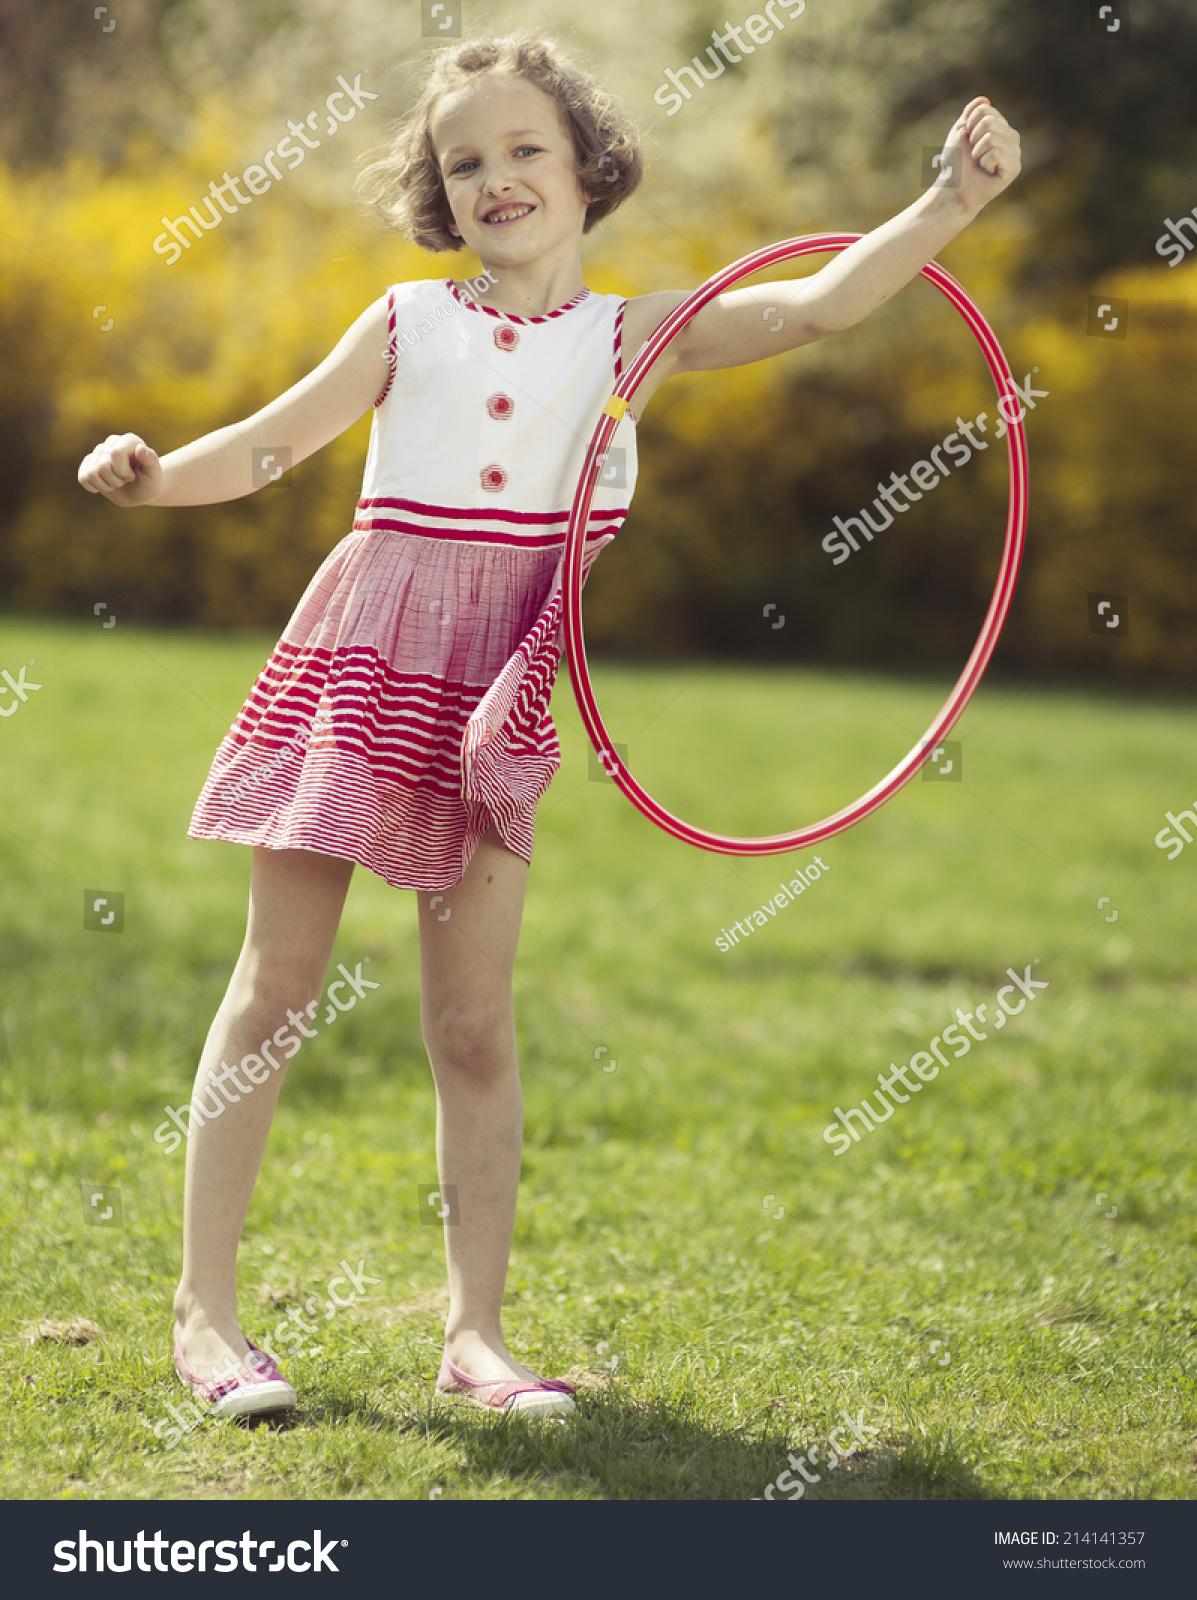 Girl swinging hula hoop